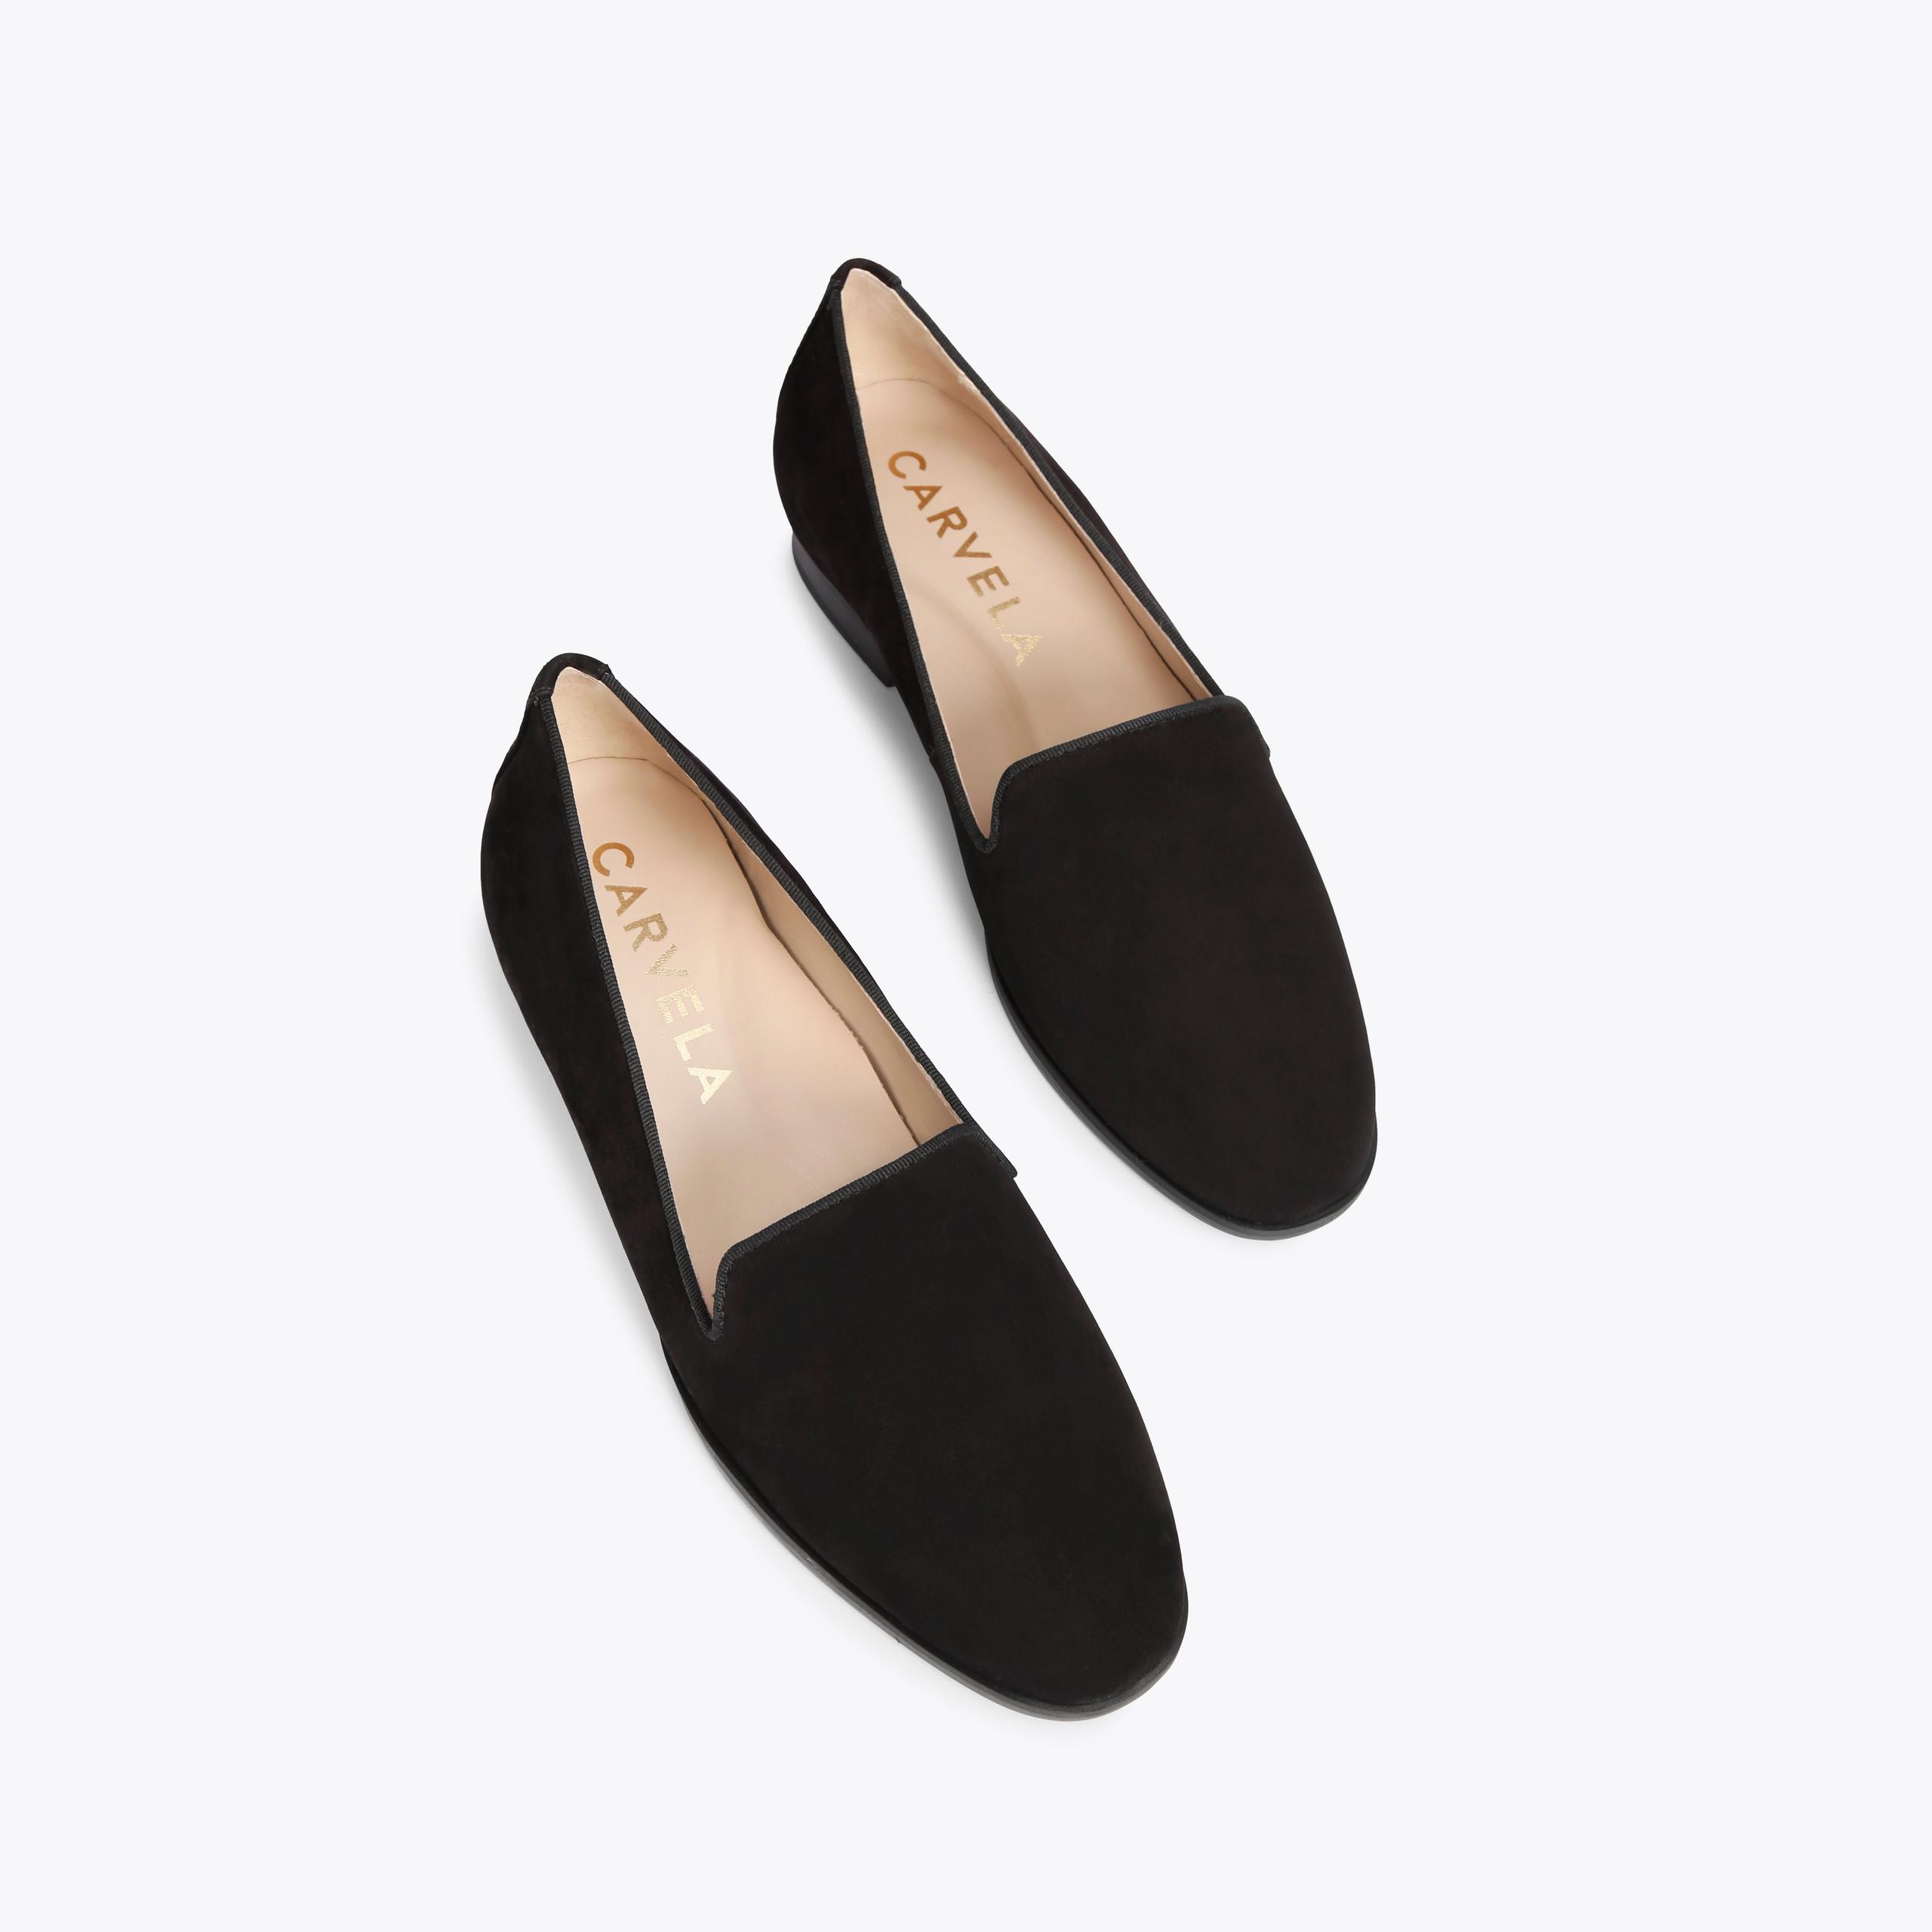 LEGEND Black Suede Slip On Flat Shoes by CARVELA COMFORT